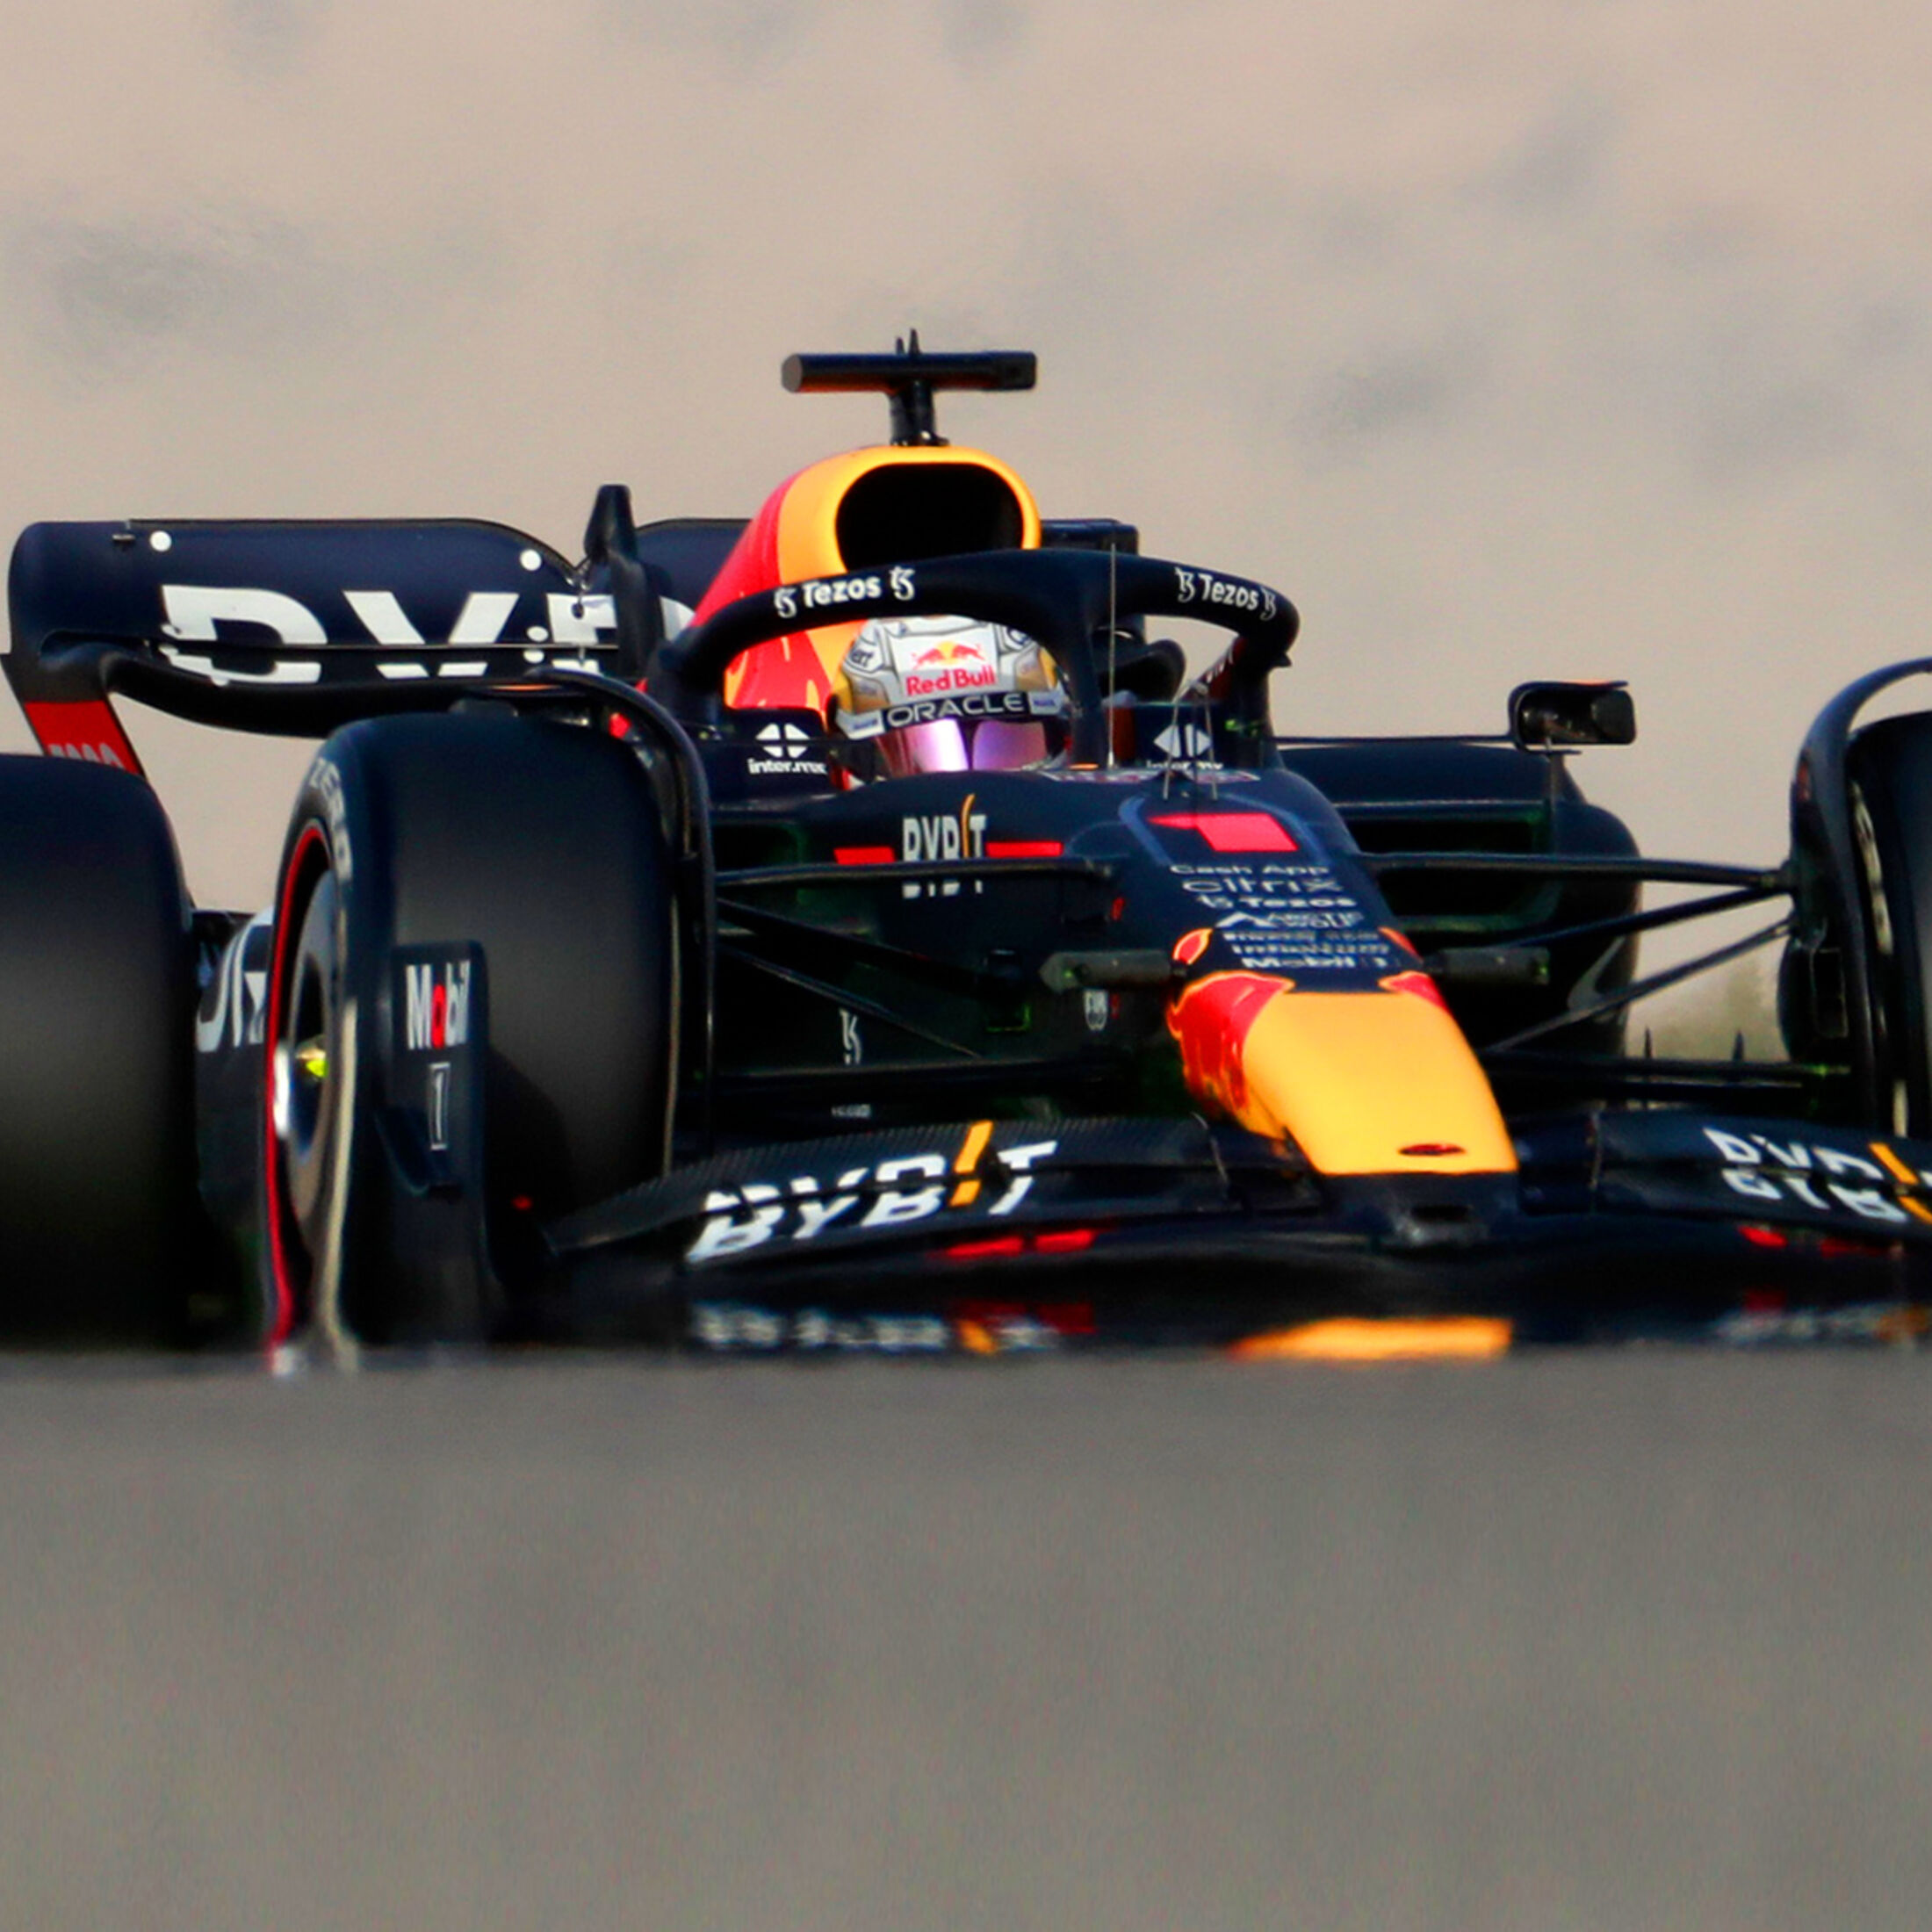 Ergebnis F1-Test Bahrain 2022 Tag 3 Verstappen vorne AUTO MOTOR UND SPORT